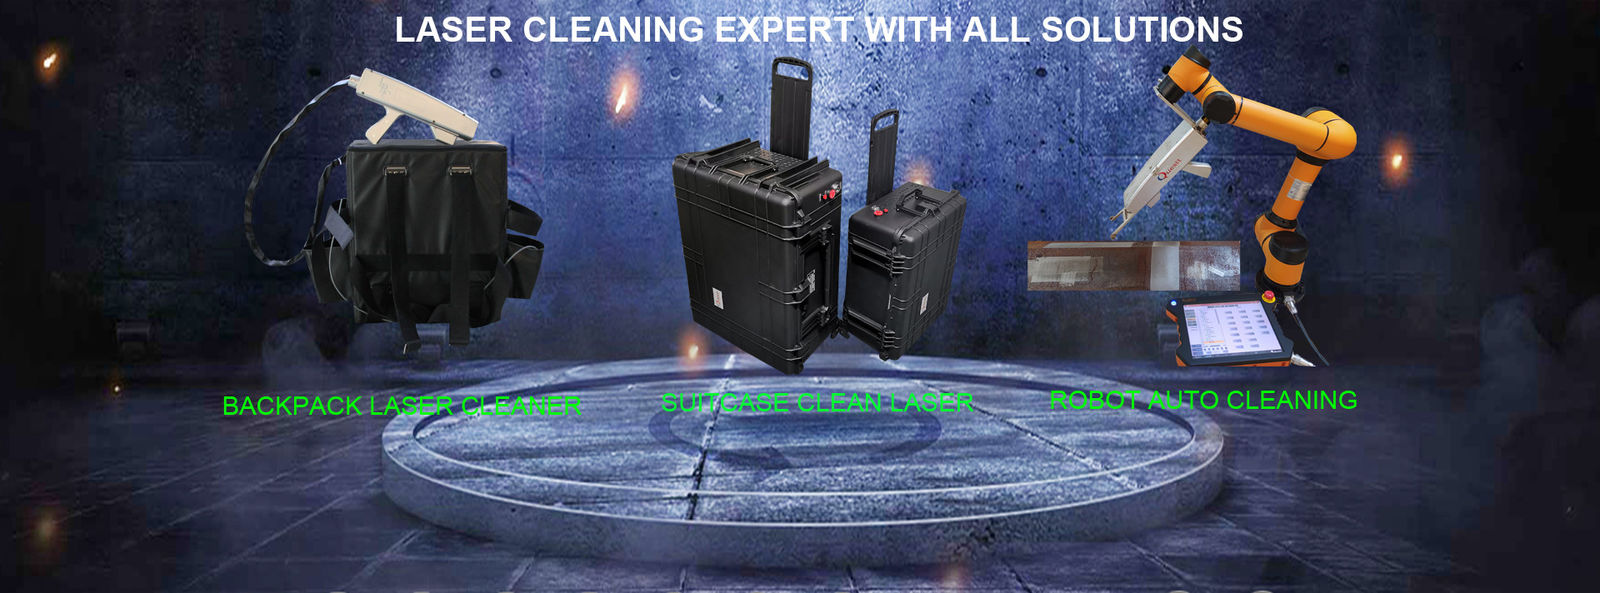 jakość Maszyna do czyszczenia laserowego Usługa